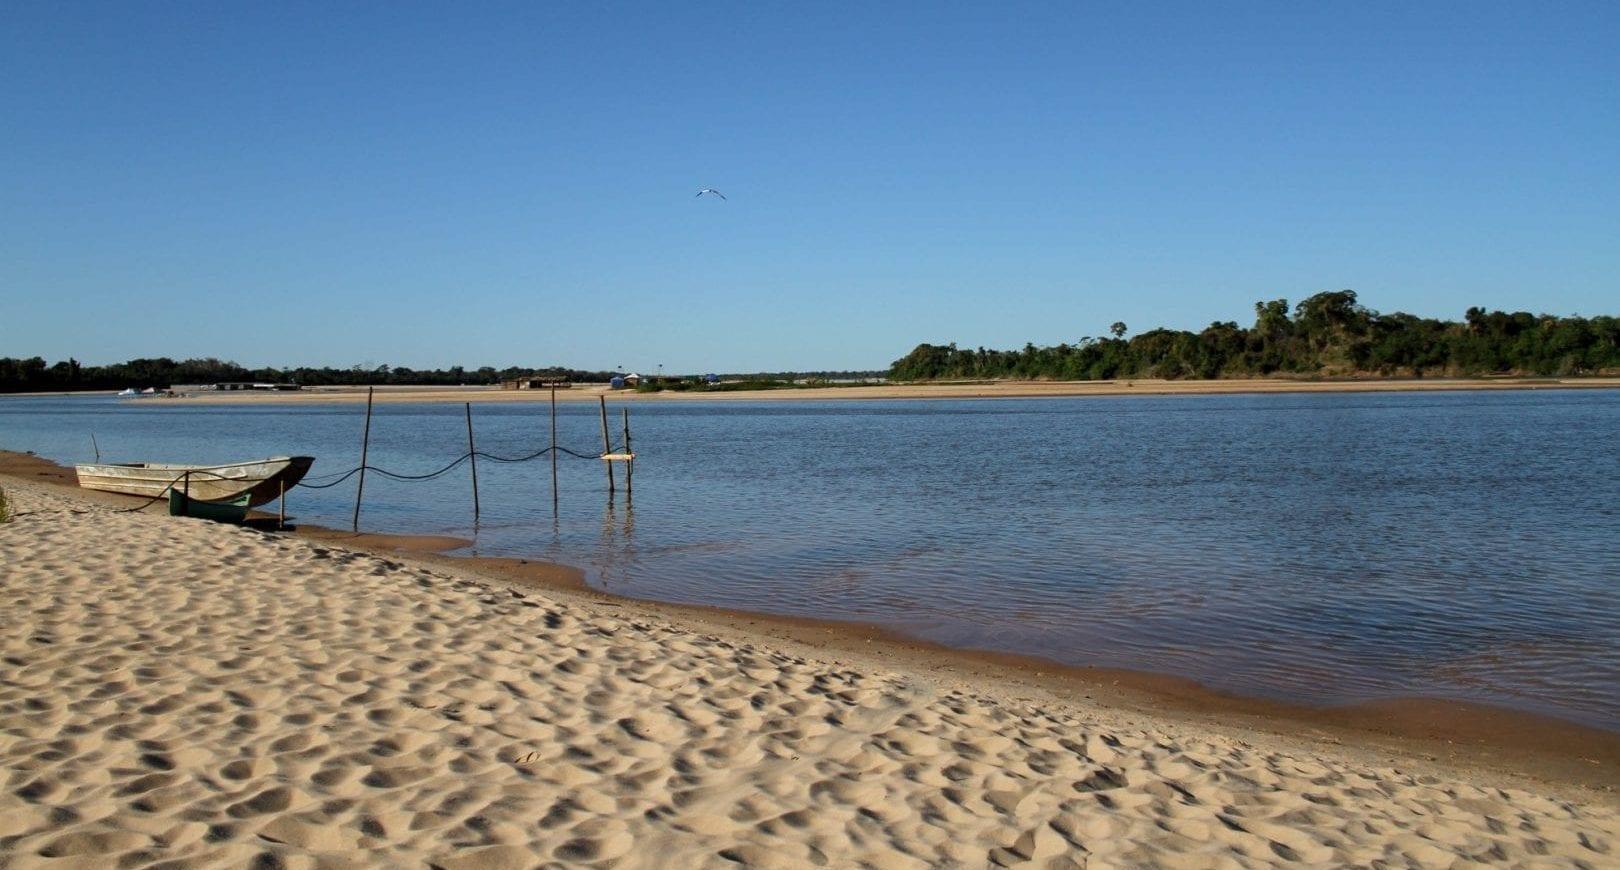 Acompanhe ao vivo as praias do Rio Araguaia durante as férias em Aruanã